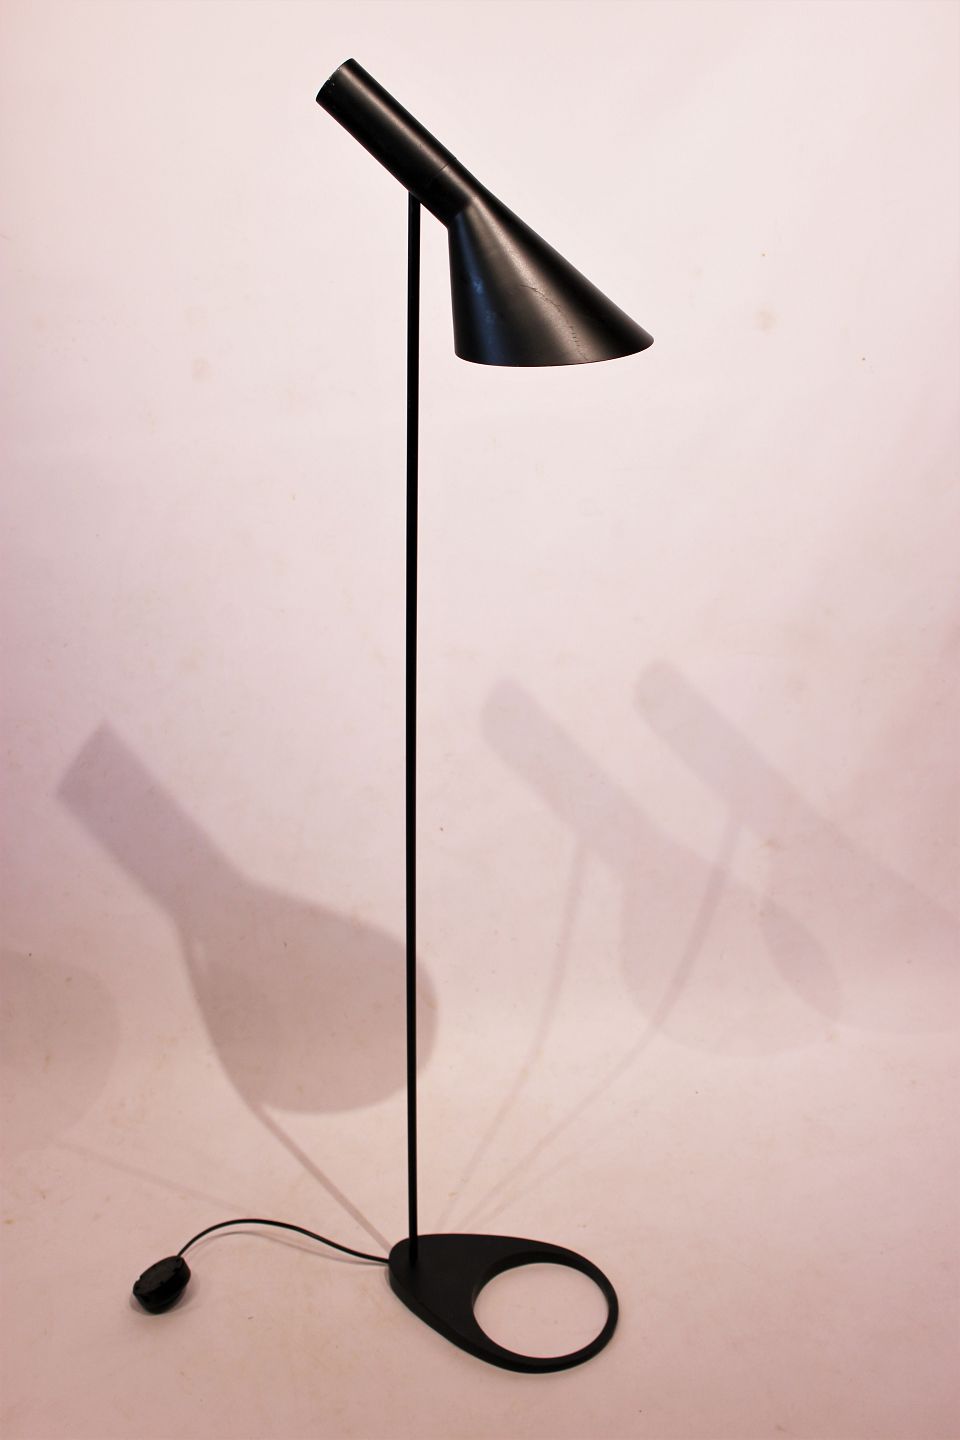 Sort gulvlampe designet af Arne Jacobsen i 1960 og fremstillet af - Antik Design